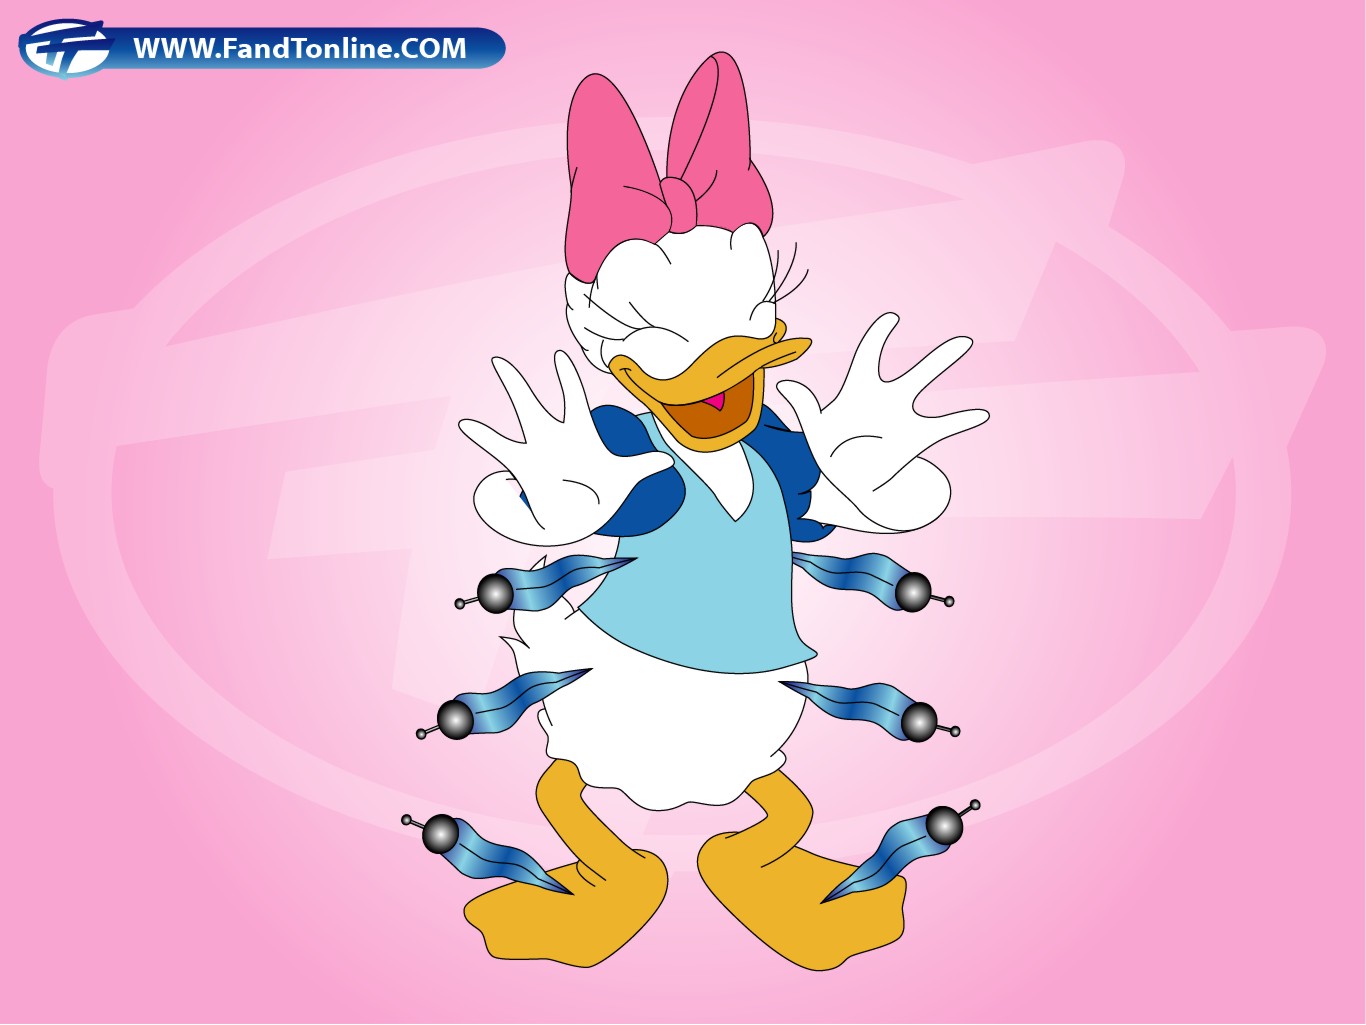 Top Cartoon Wallpaper Donald Daisy Duck